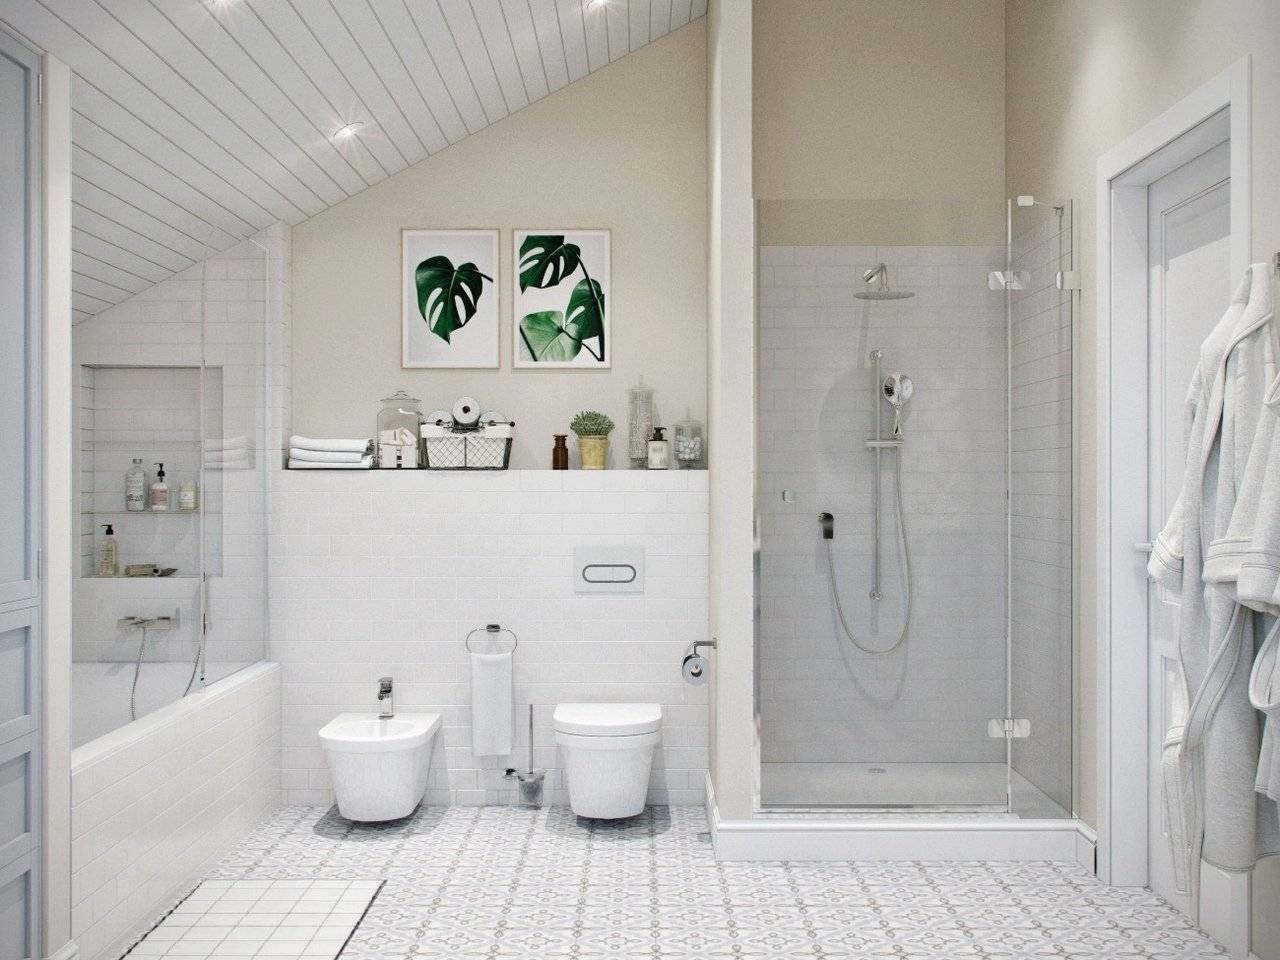 Скандинавский стиль: нордический характер в интерьере ванной комнаты